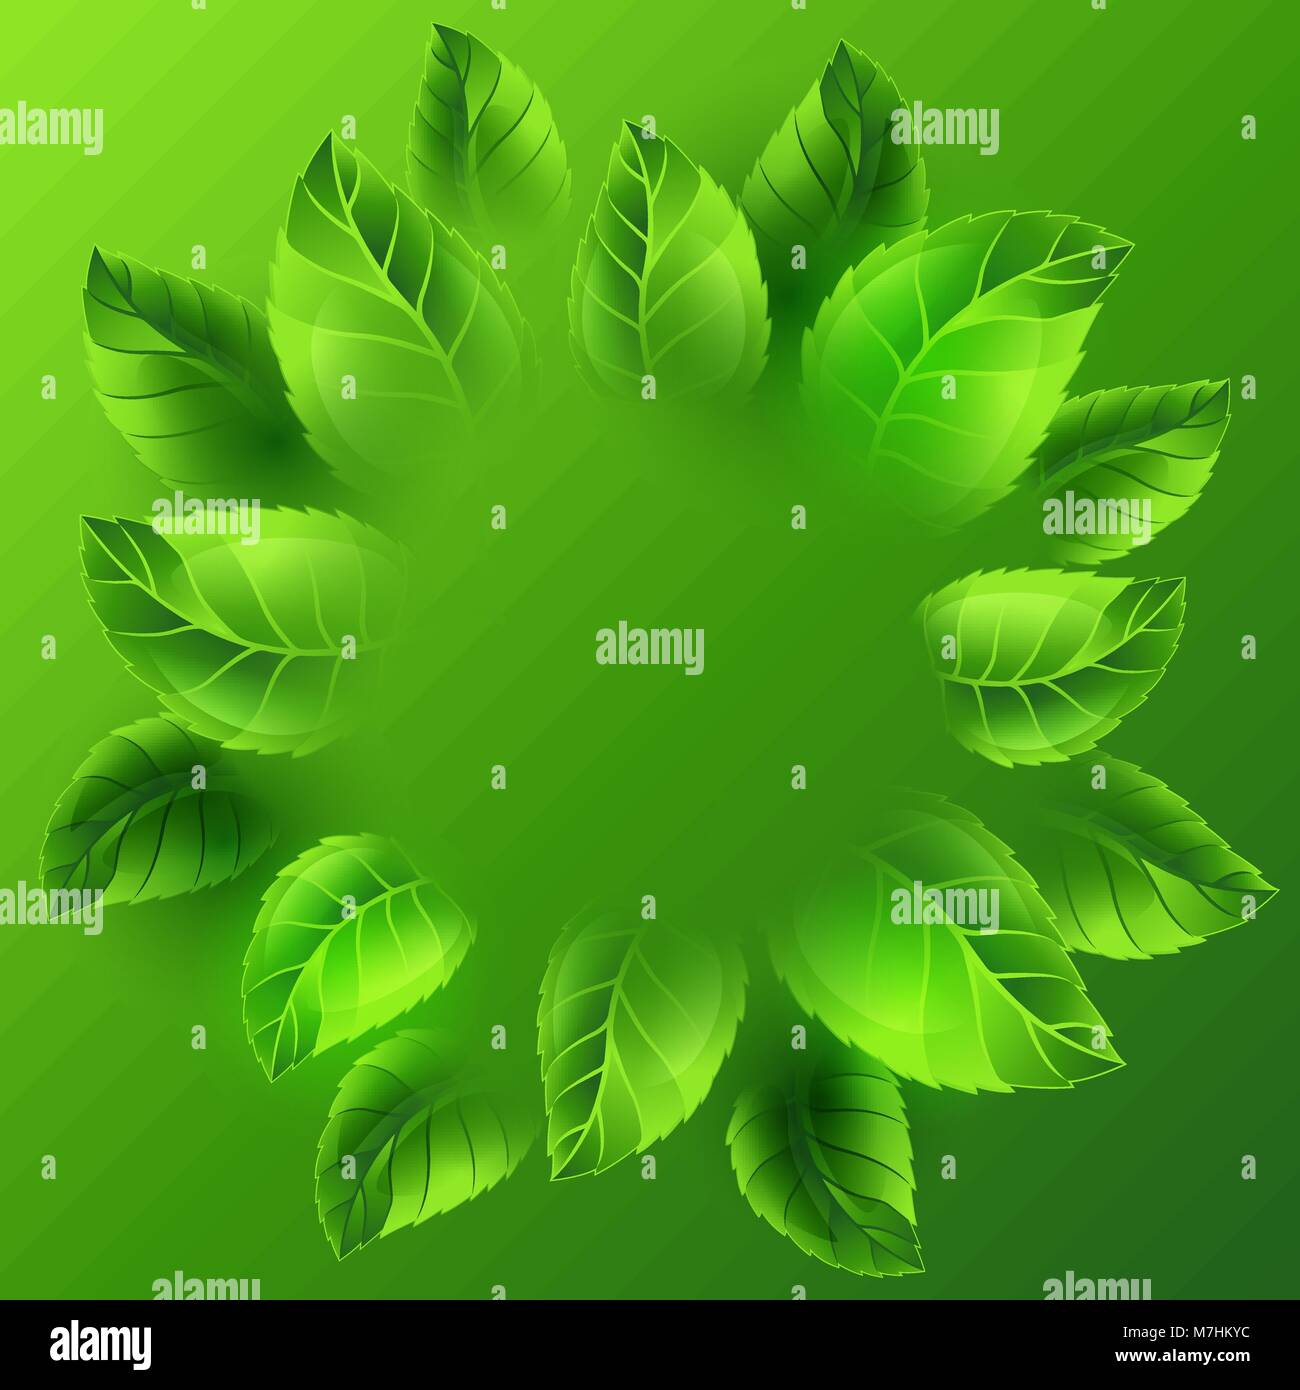 Feder Abbildung mit grünen Blättern. Karte Vorlage oder Ökologie Konzept der Floral Design für Verpackung, Grußkarten und Werbung Stock Vektor